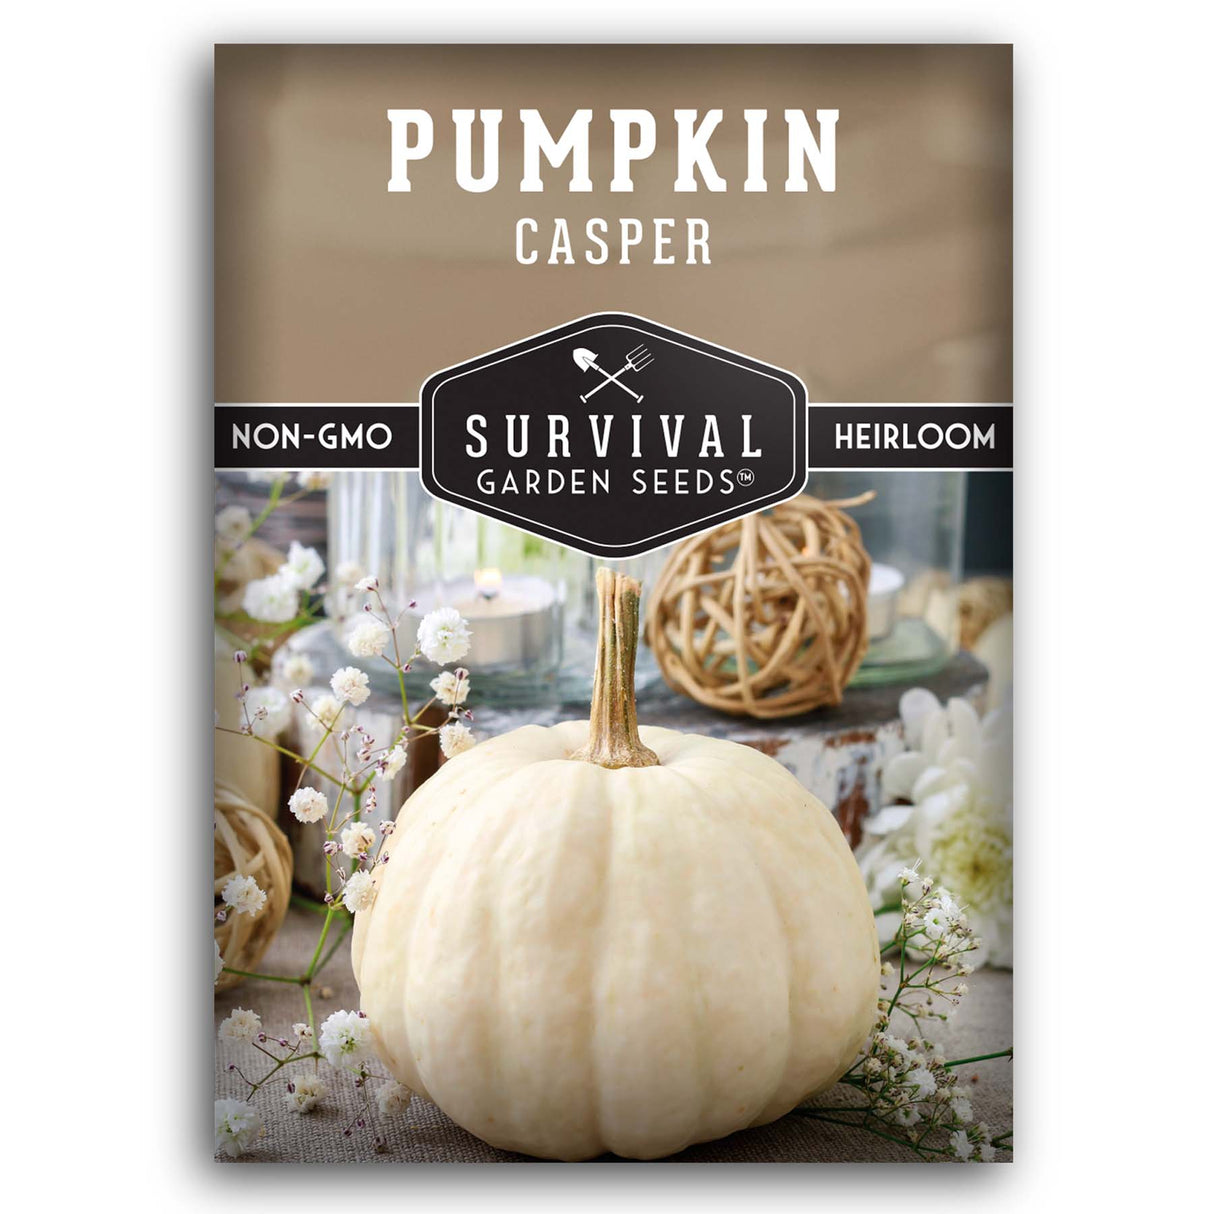 Casper Pumpkin seeds for planting